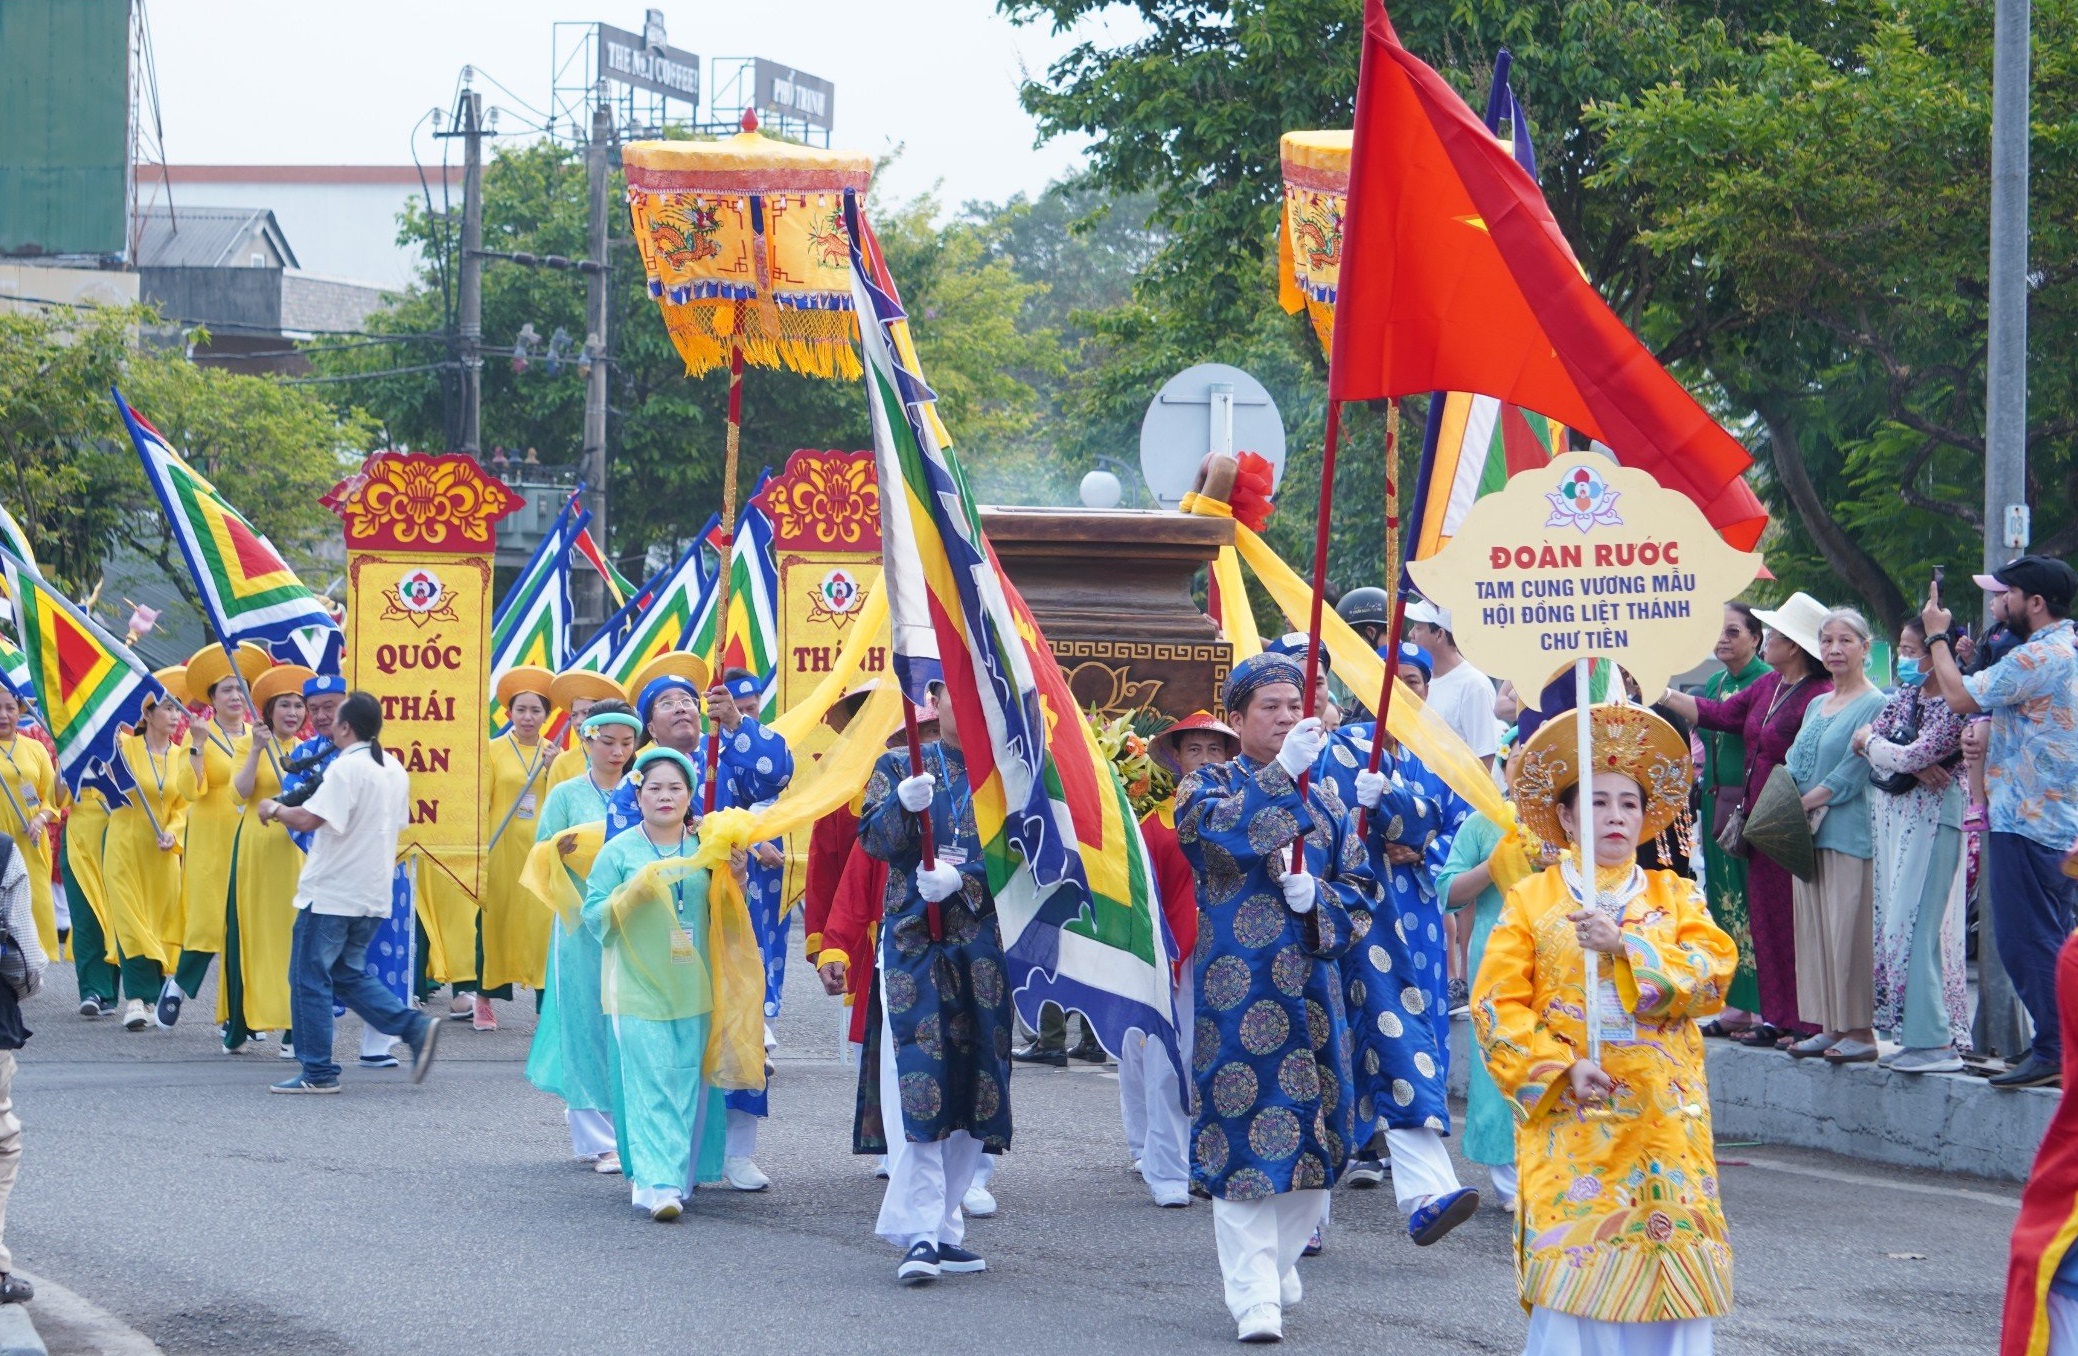 Hàng nghìn người tham gia đoàn rước đường bộ kéo dài 3km tại lễ hội điện Huệ Nam- Ảnh 5.